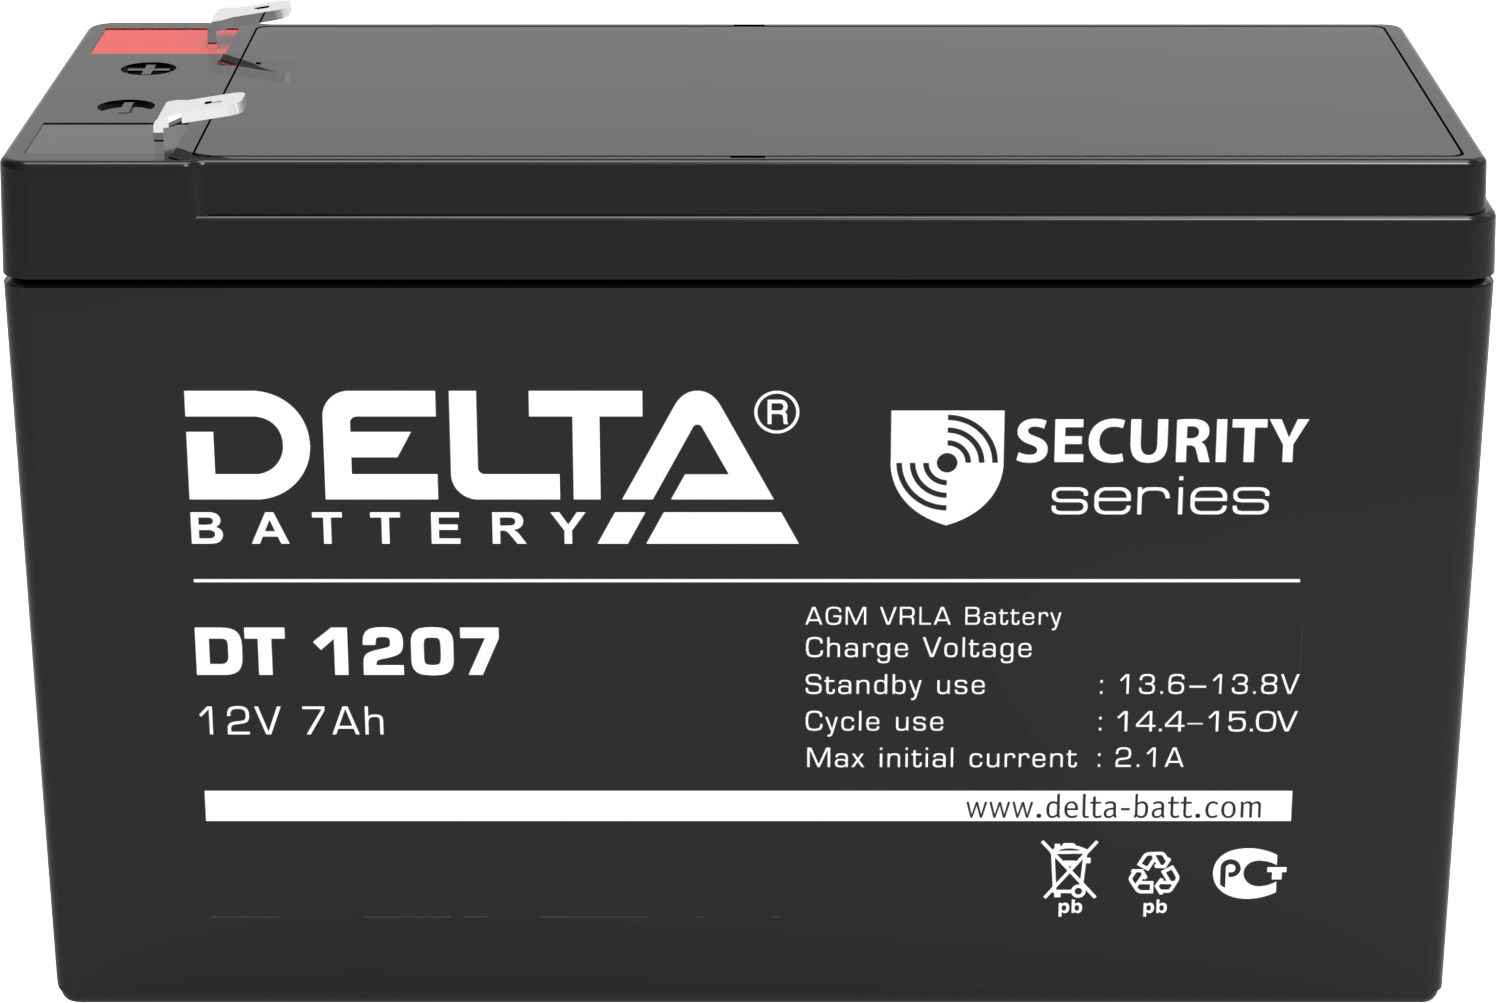 Аккумулятор 7ah. Батарея Delta DT 1207 (12v, 7ah) <DT 1207>. Delta Battery DT 1207 12v 7ah. Аккумуляторная батарея Delta DT 1207 (12v / 7ah). Дельта аккумулятор 12v 7ah.